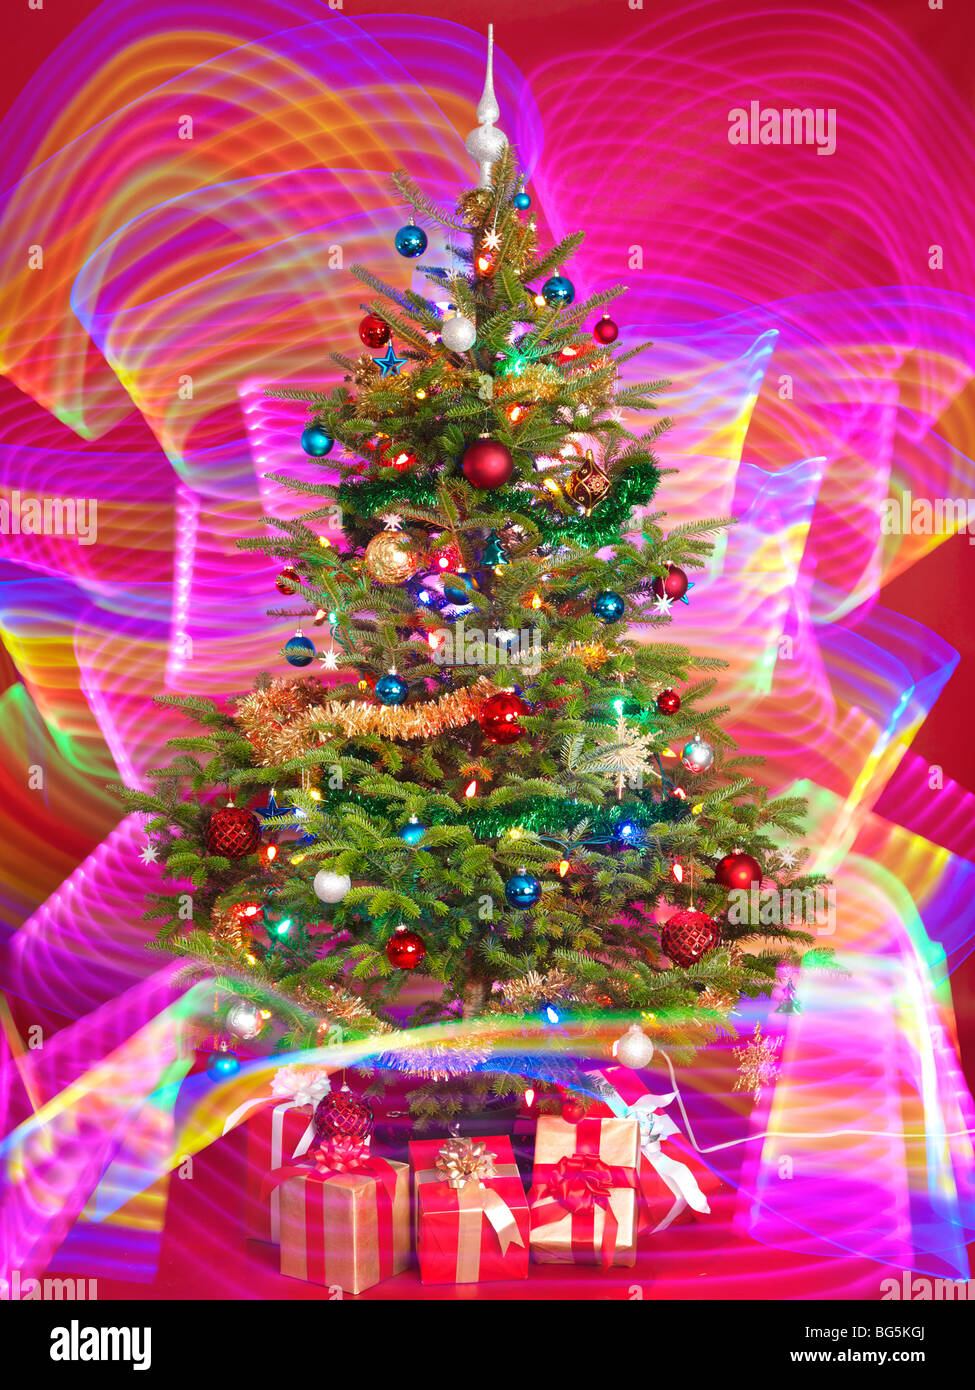 Albero di Natale decorato con viola gli effetti di illuminazione intorno ad esso Foto Stock